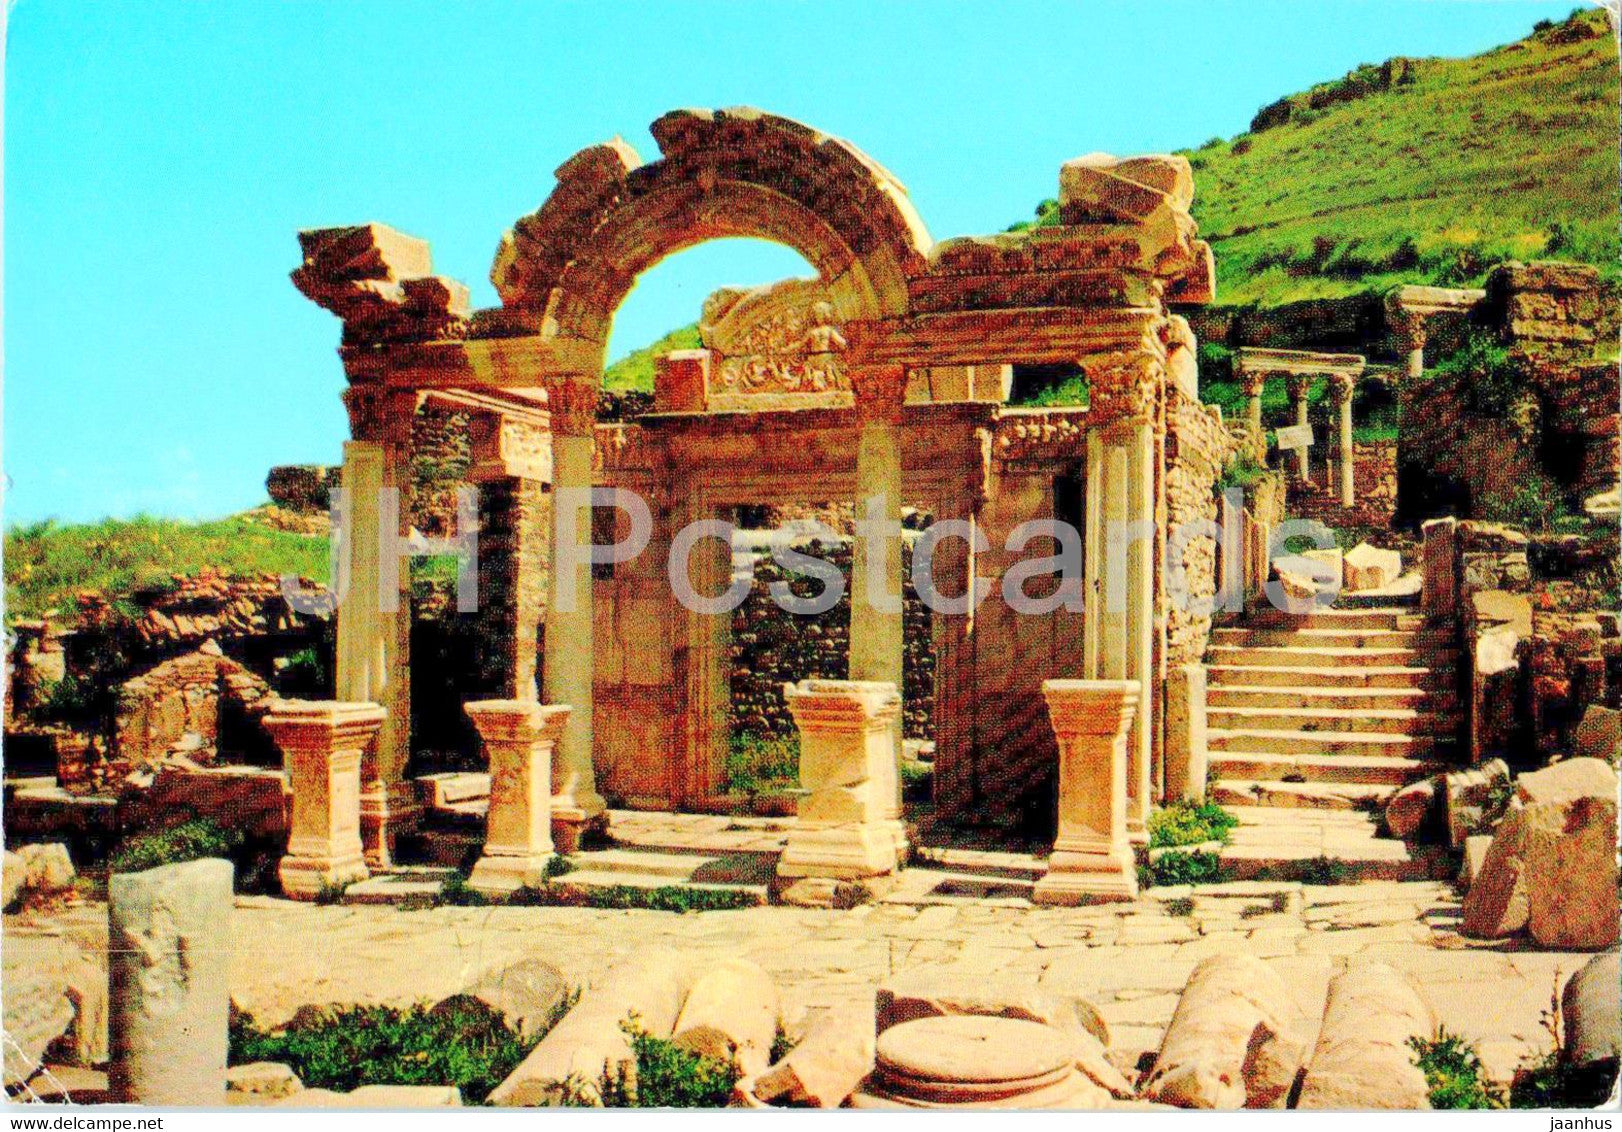 Ephesus - Efes - Temple of Hadrianus - ancient world - 425 - Turkey - used - JH Postcards